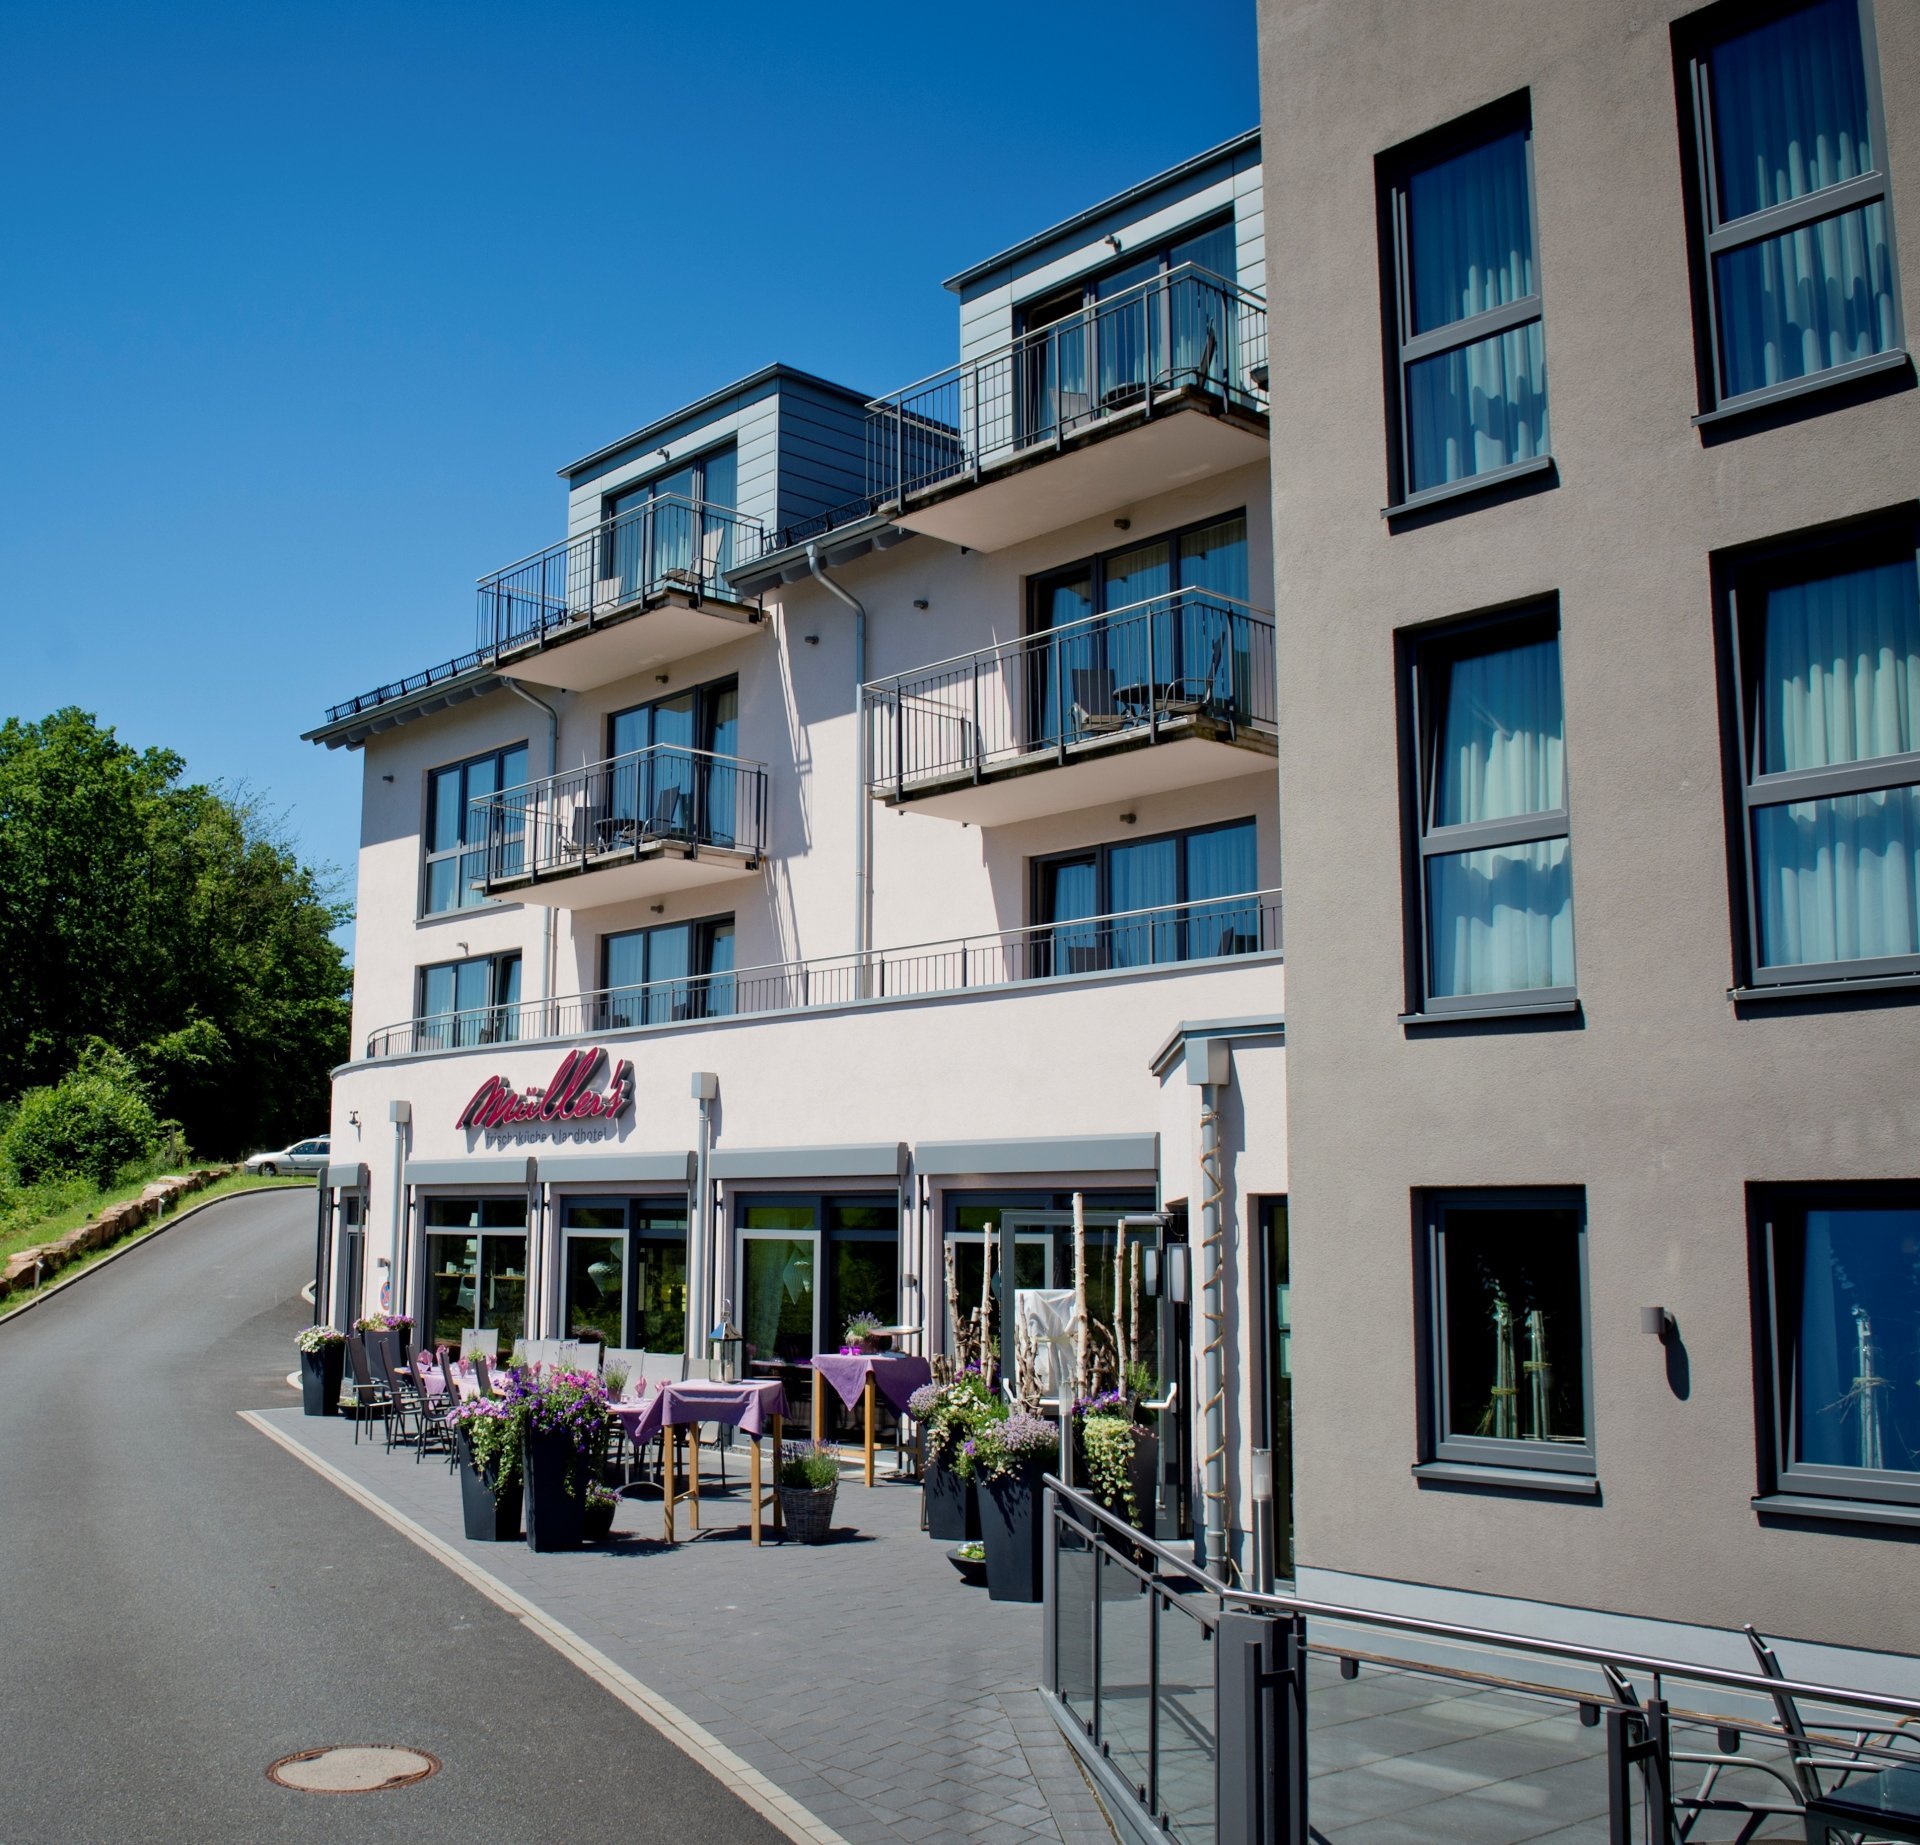 5 Tage Biken bei Müller´s – Müller´s Landhotel (3 Sterne) in Mespelbrunn, Bayern inkl. Halbpension